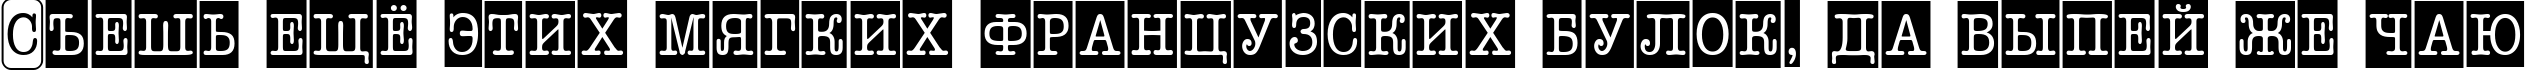 Пример написания шрифтом a_OldTyperNrCmCmb3 текста на русском